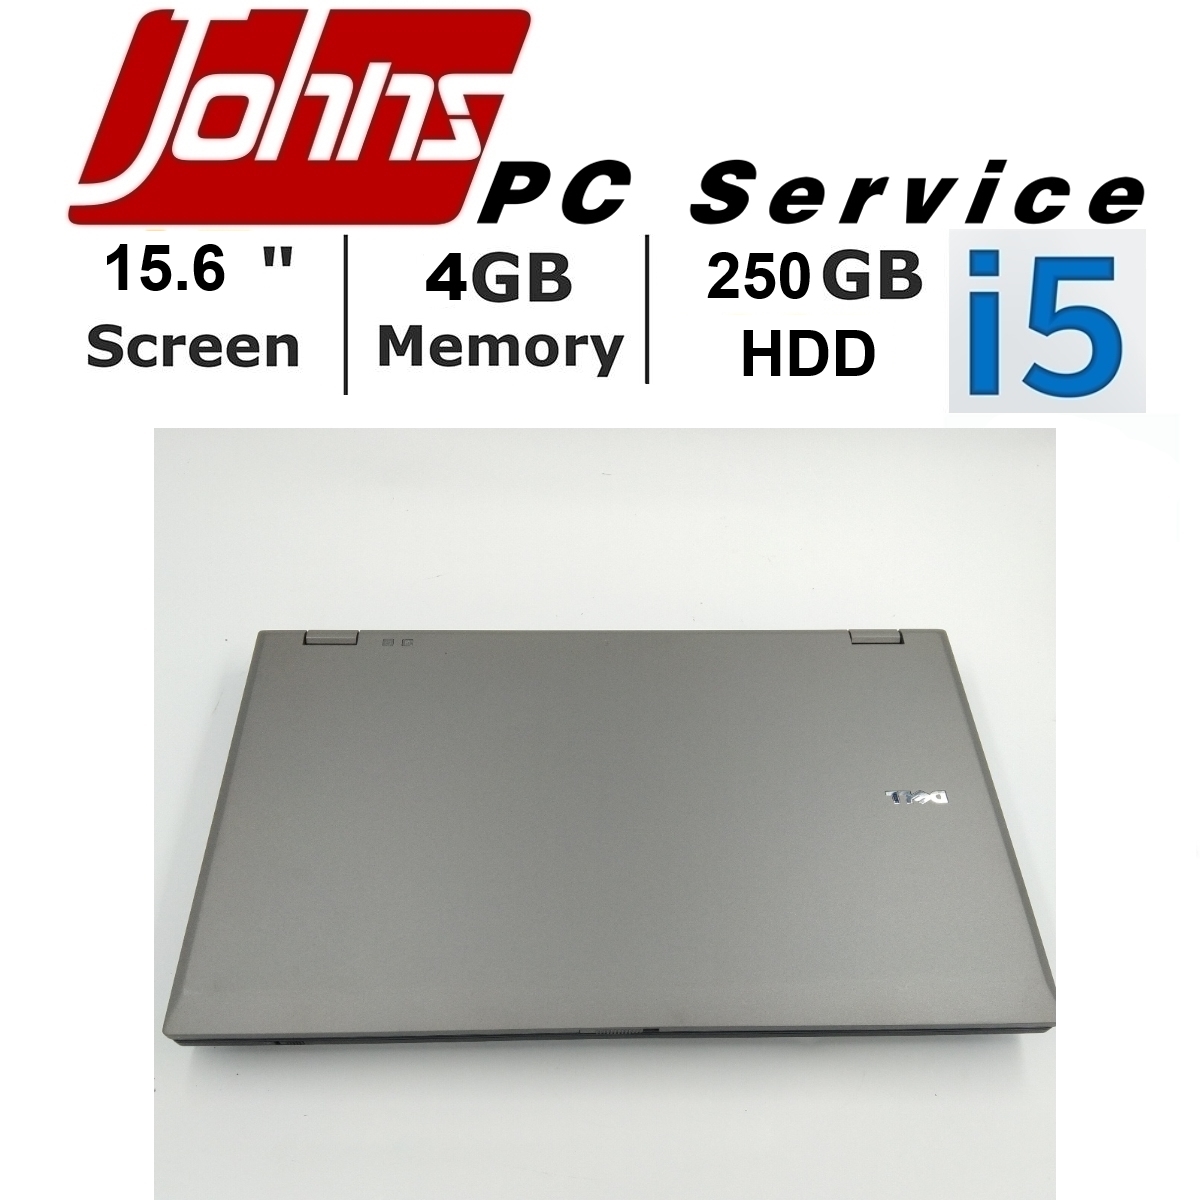 โน๊ตบุ๊คมือสอง DELL E5510 i5 // Toshiba S500/F60 i5 15.6นิ้ว Notebook ราคาถูกๆ โน๊ตบุ๊ค laptop มือสอง โน็ตบุ๊คมือ2 โน้ตบุ๊คถูกๆ โน๊ตบุ๊คมือสอง2